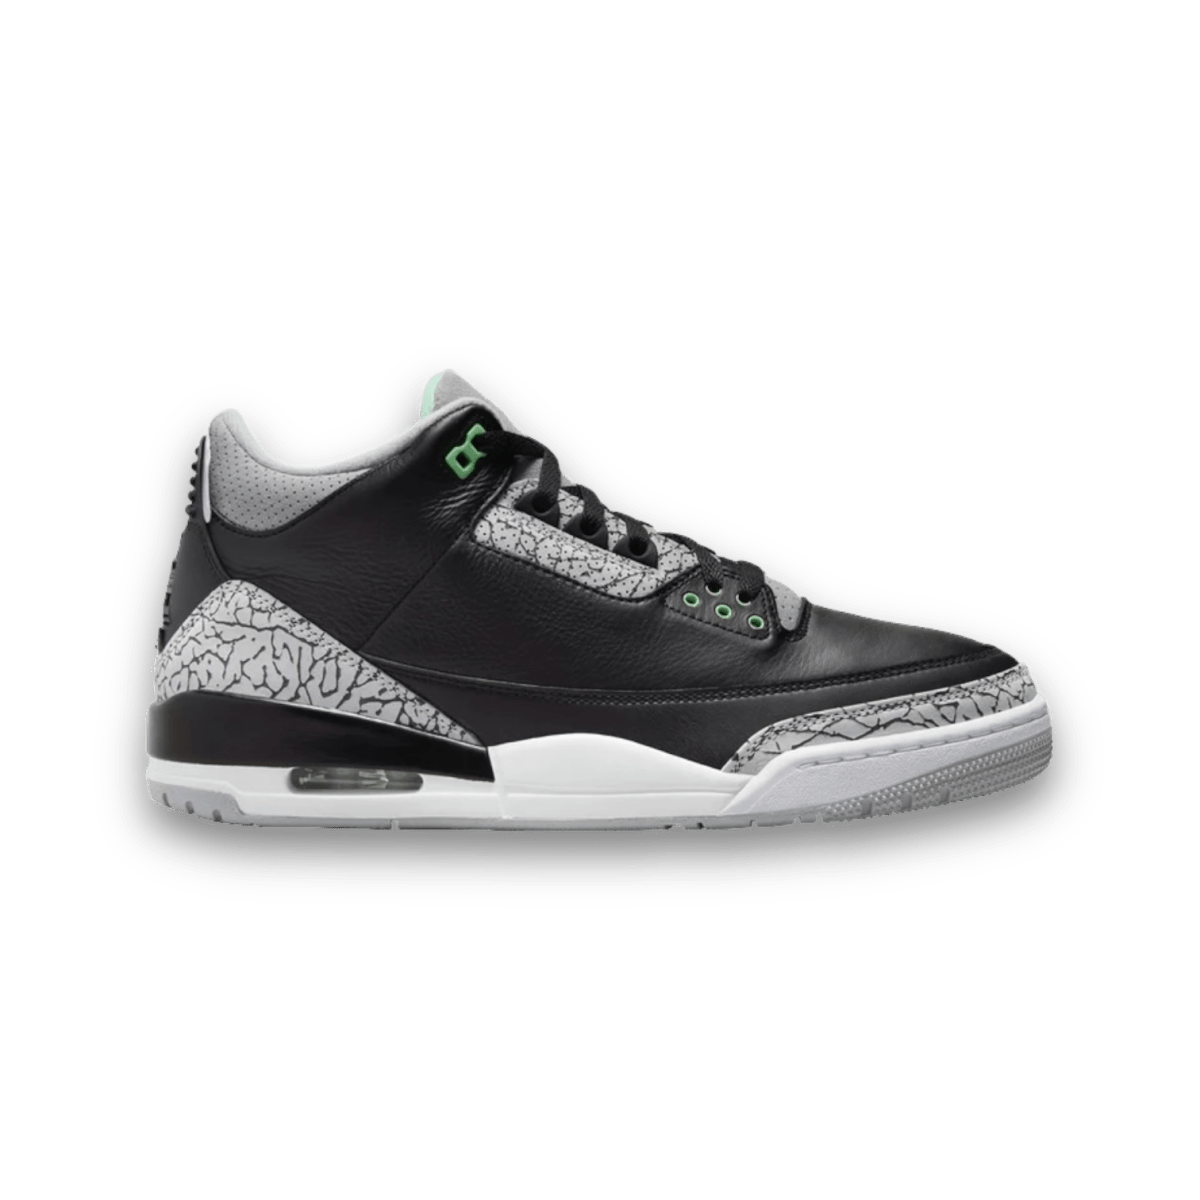 Air Jordan 3 Retro 'Green Glow' - Grade School - Mid Sneaker - Jawns on Fire Sneakers & Streetwear